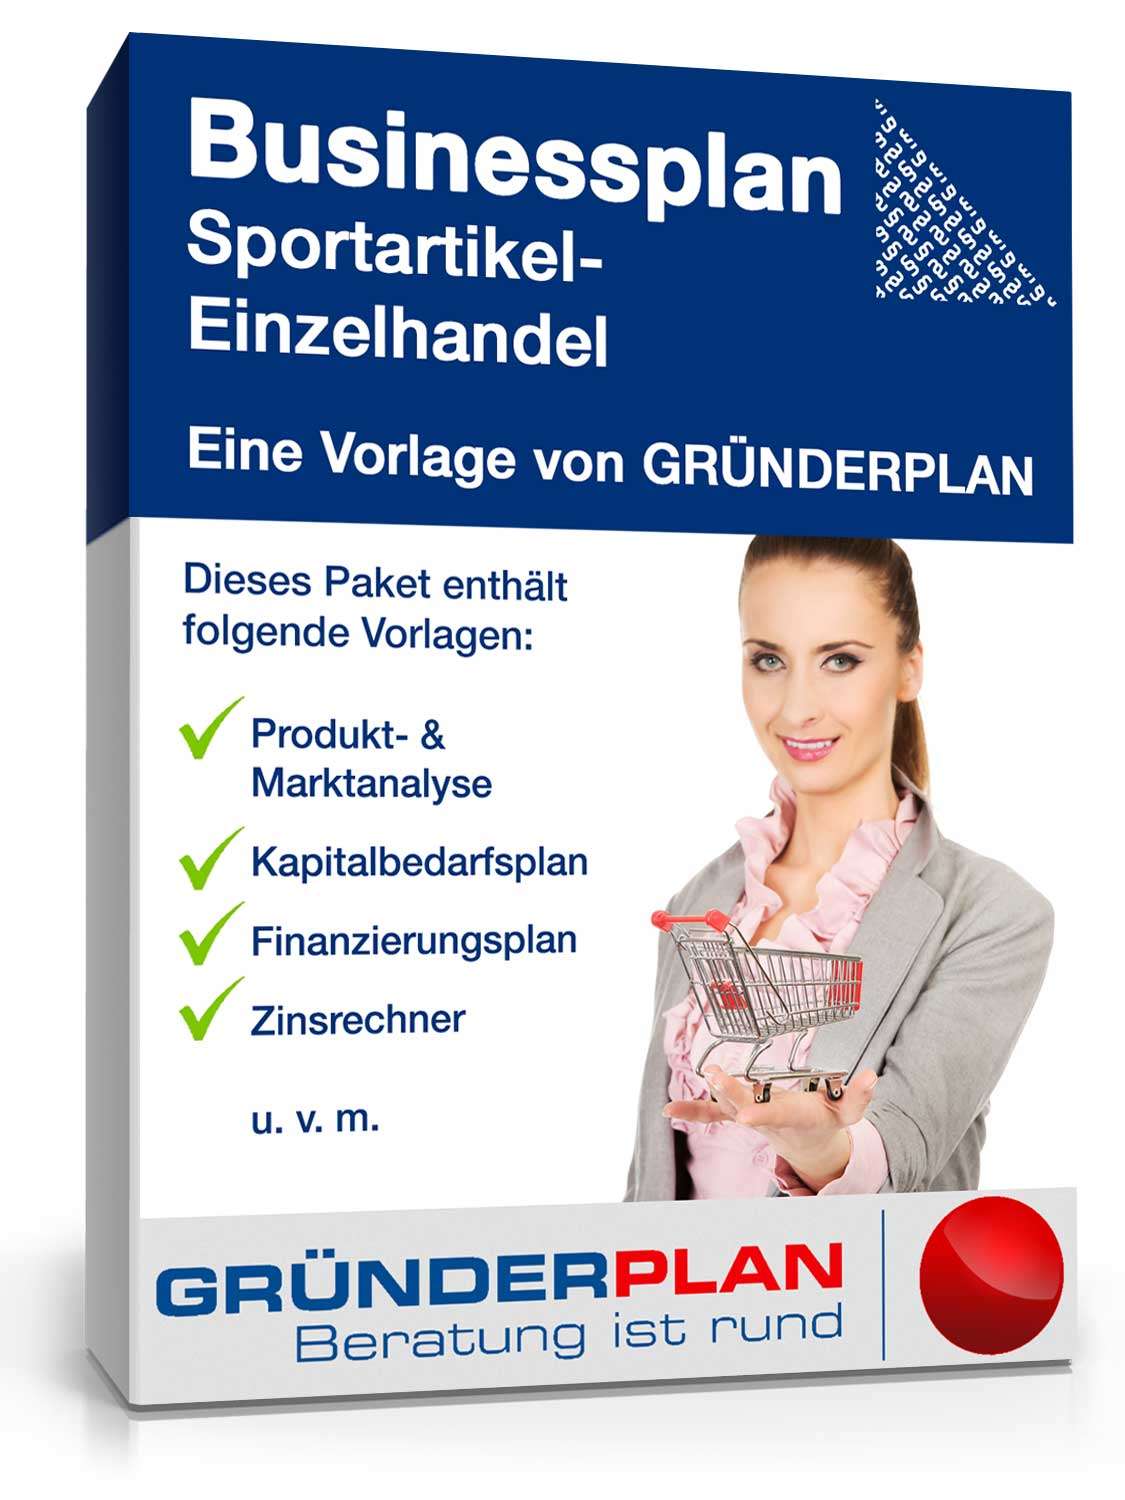 Hauptbild des Produkts: Businessplan Sportartikel-Einzelhandel von Gründerplan